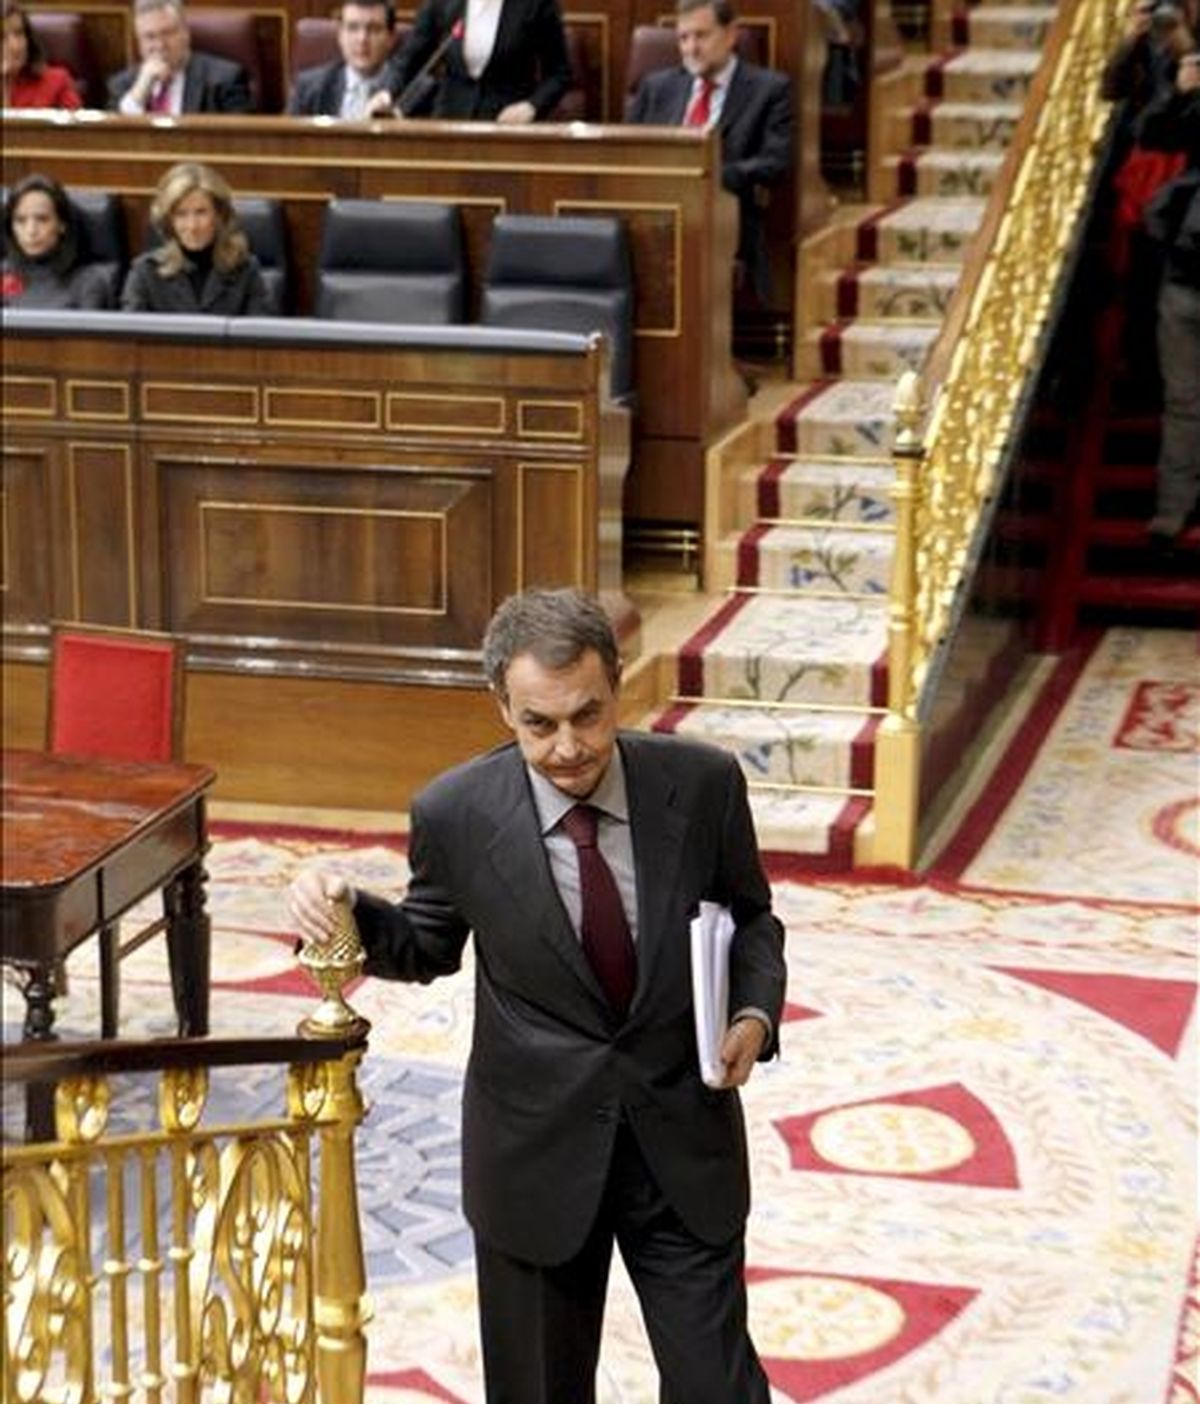 El presidente del Gobierno, José Luis Rodríguez Zapatero, se dirige hacia la tribuna para intervenir hoy en la sesión de control en el pleno del Congreso de los Diputados. EFE